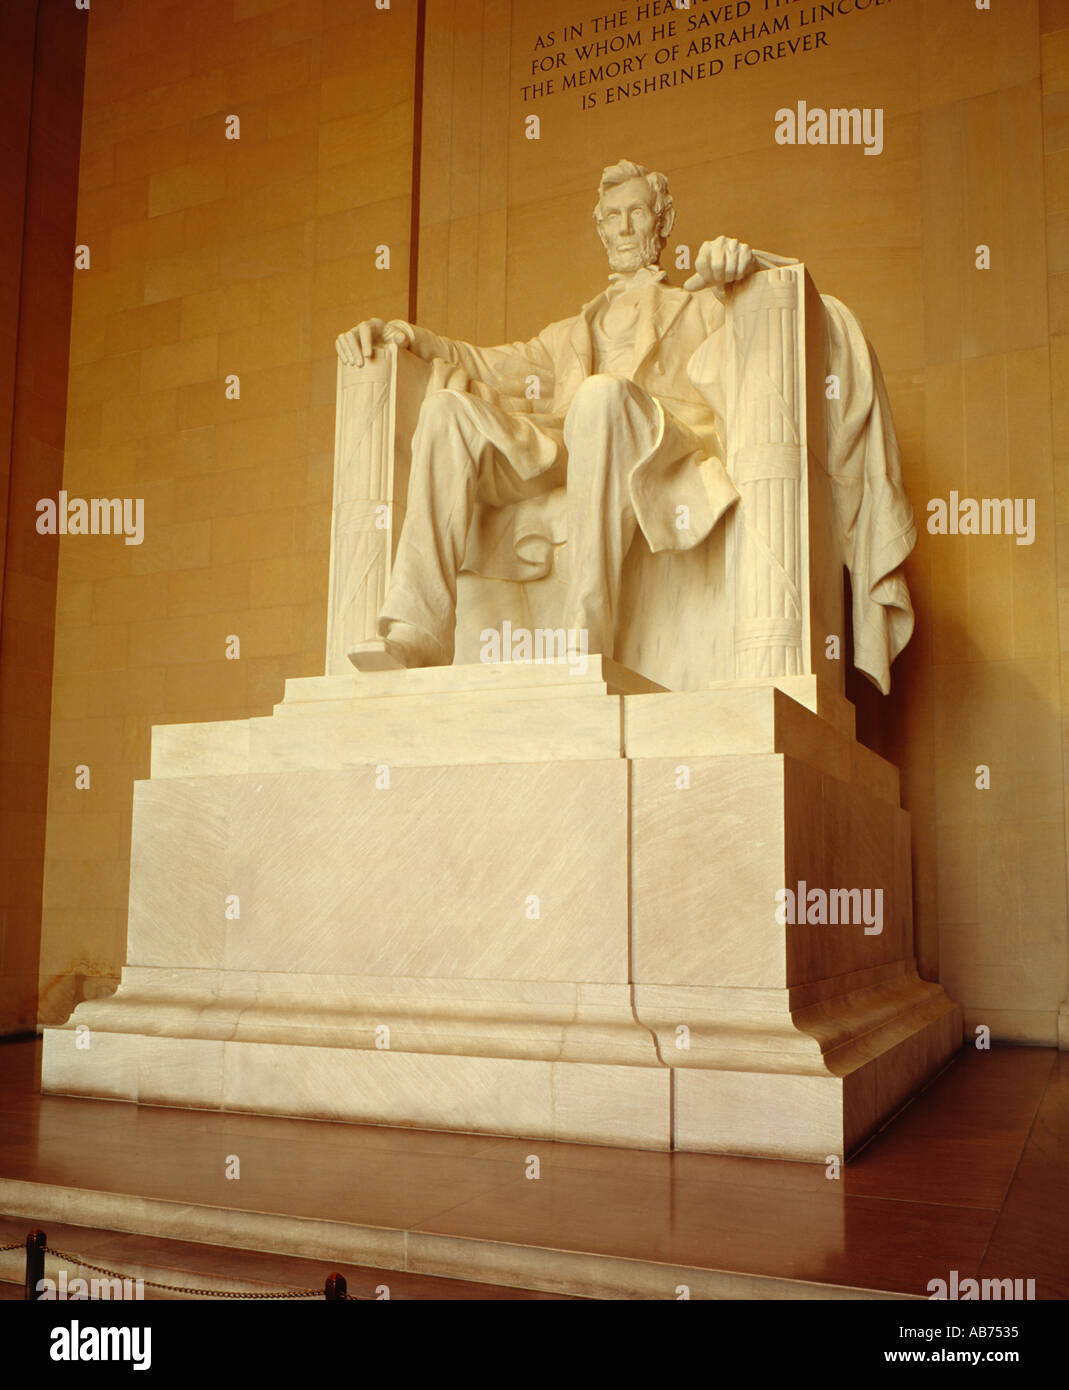 Lincoln Memorial Washington D C USA Stock Photo